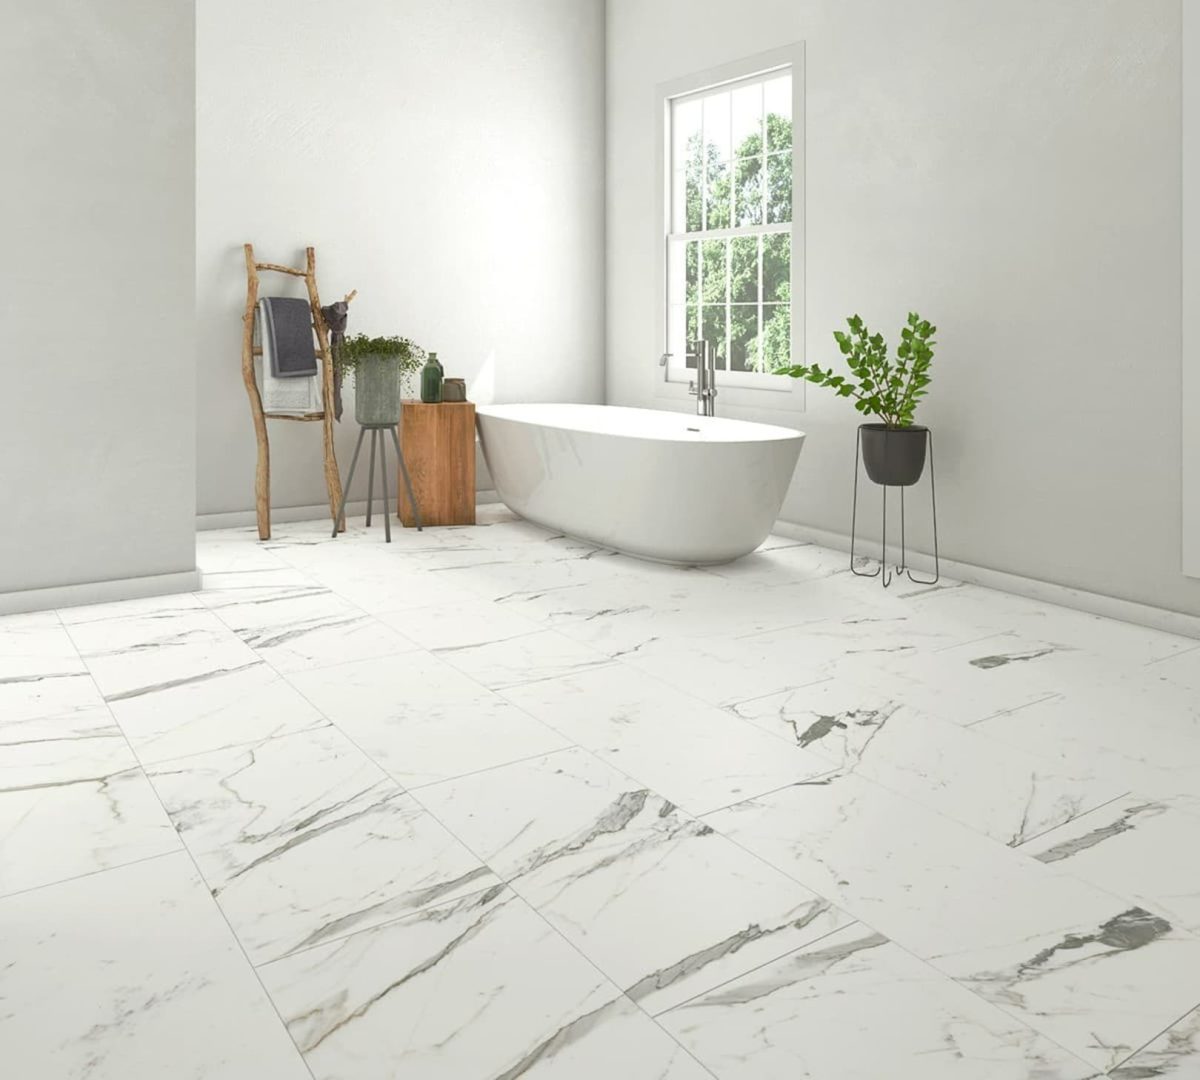 SIKO_Obkladové panely na zdech i podlaze v designu bílého mramoru s tmavým žilkováním. Volně stojící vana. Minimalistická koupelna.